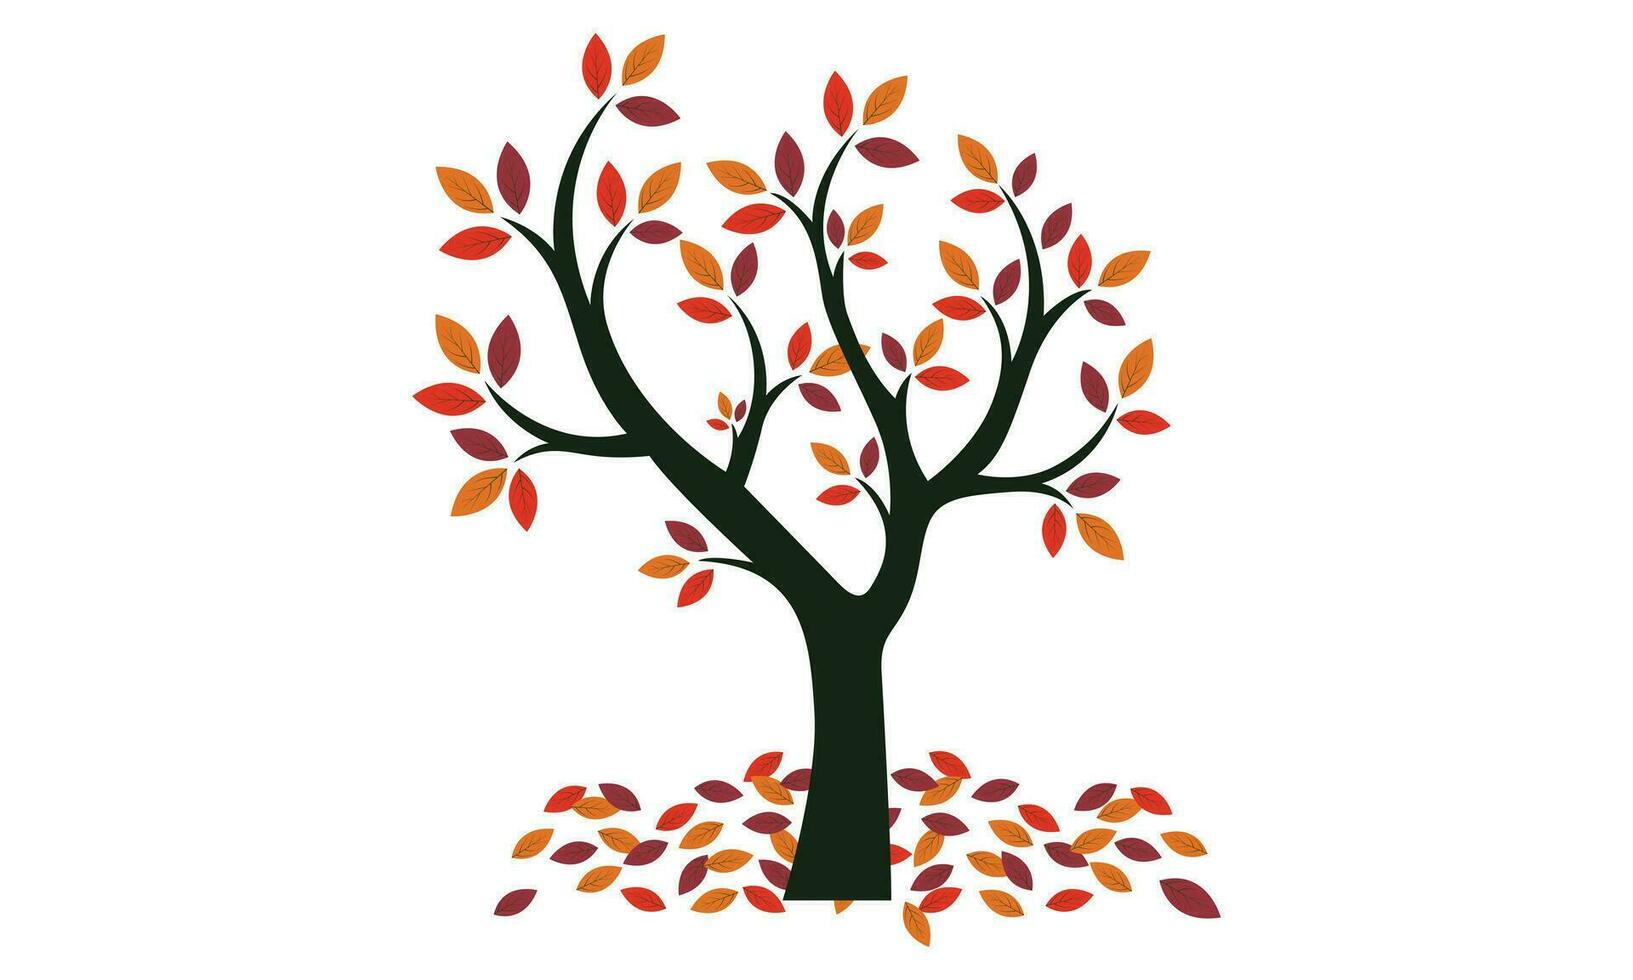 otoño arboles vistoso jardín árbol, otoñal jardín arbusto y otoño temporada árbol hojas. bosque oro y verde sucursales, otoño amarillo y naranja parque arboles aislado vector ilustración íconos conjunto